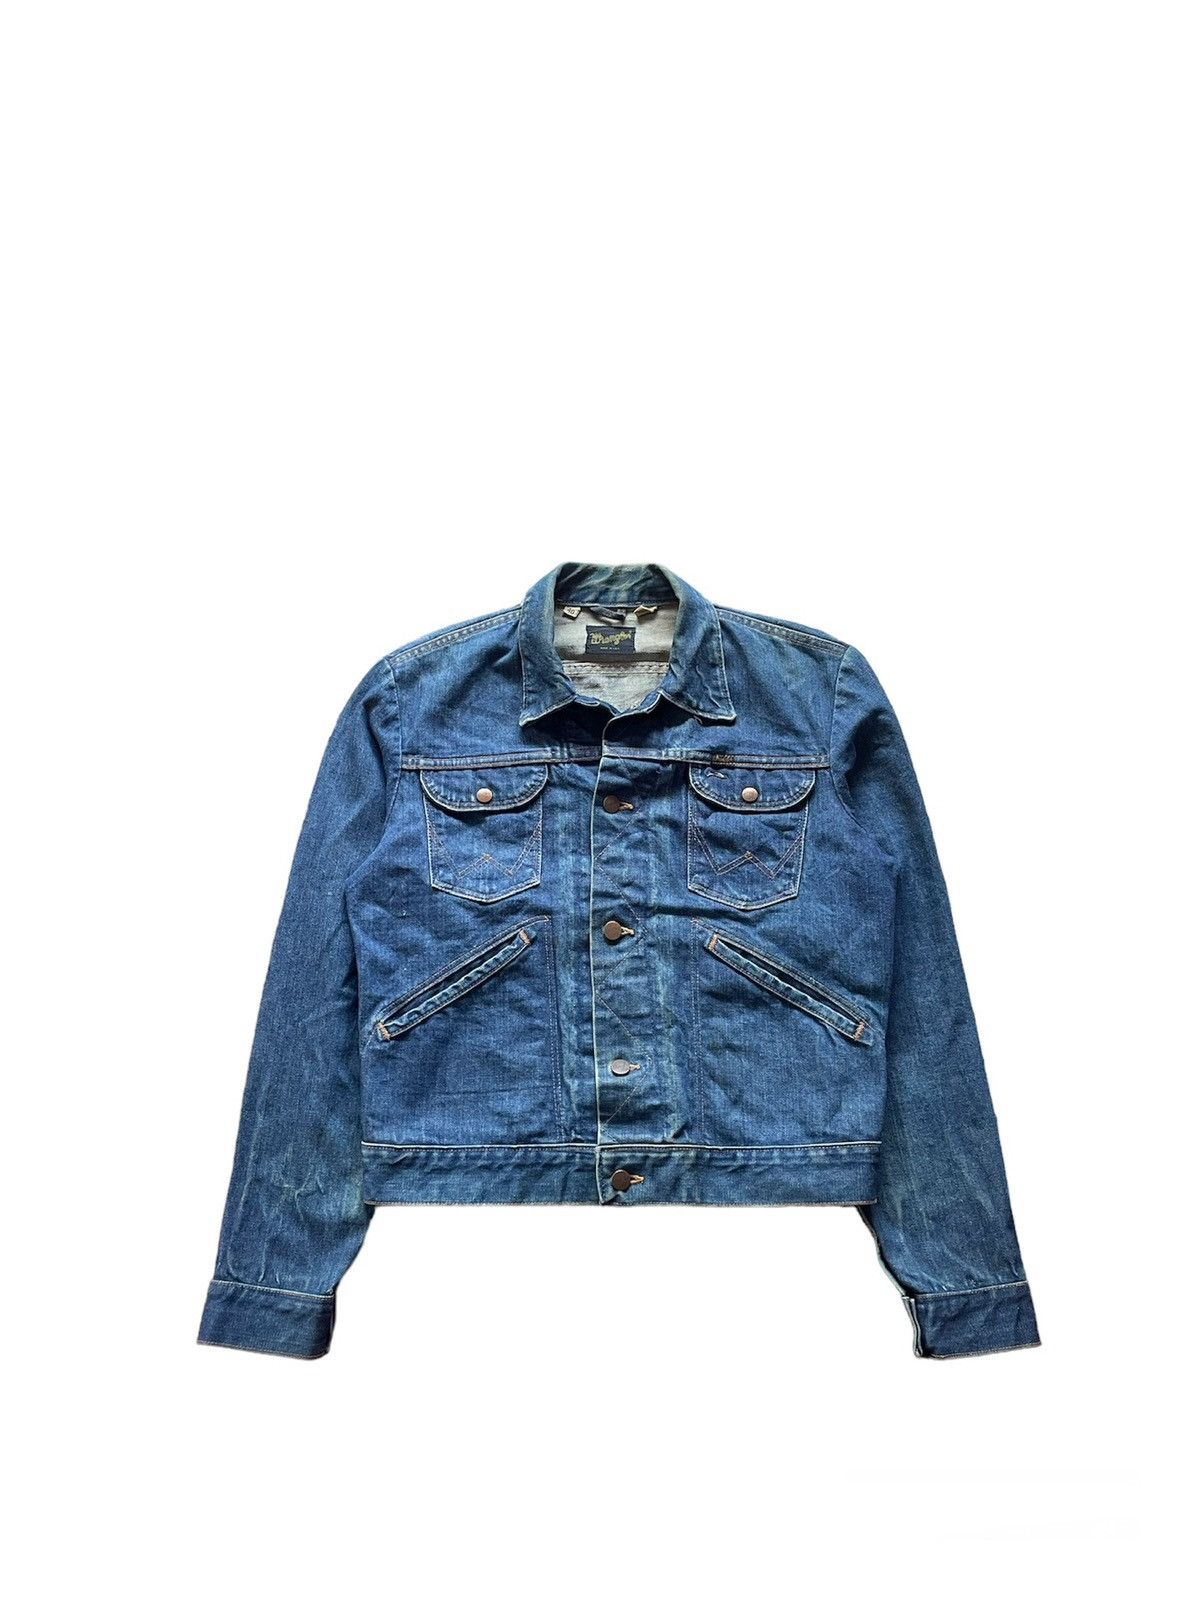 Vintage Vintage 80’s Wrangler Denim Jacket Liam Gallagher | Grailed